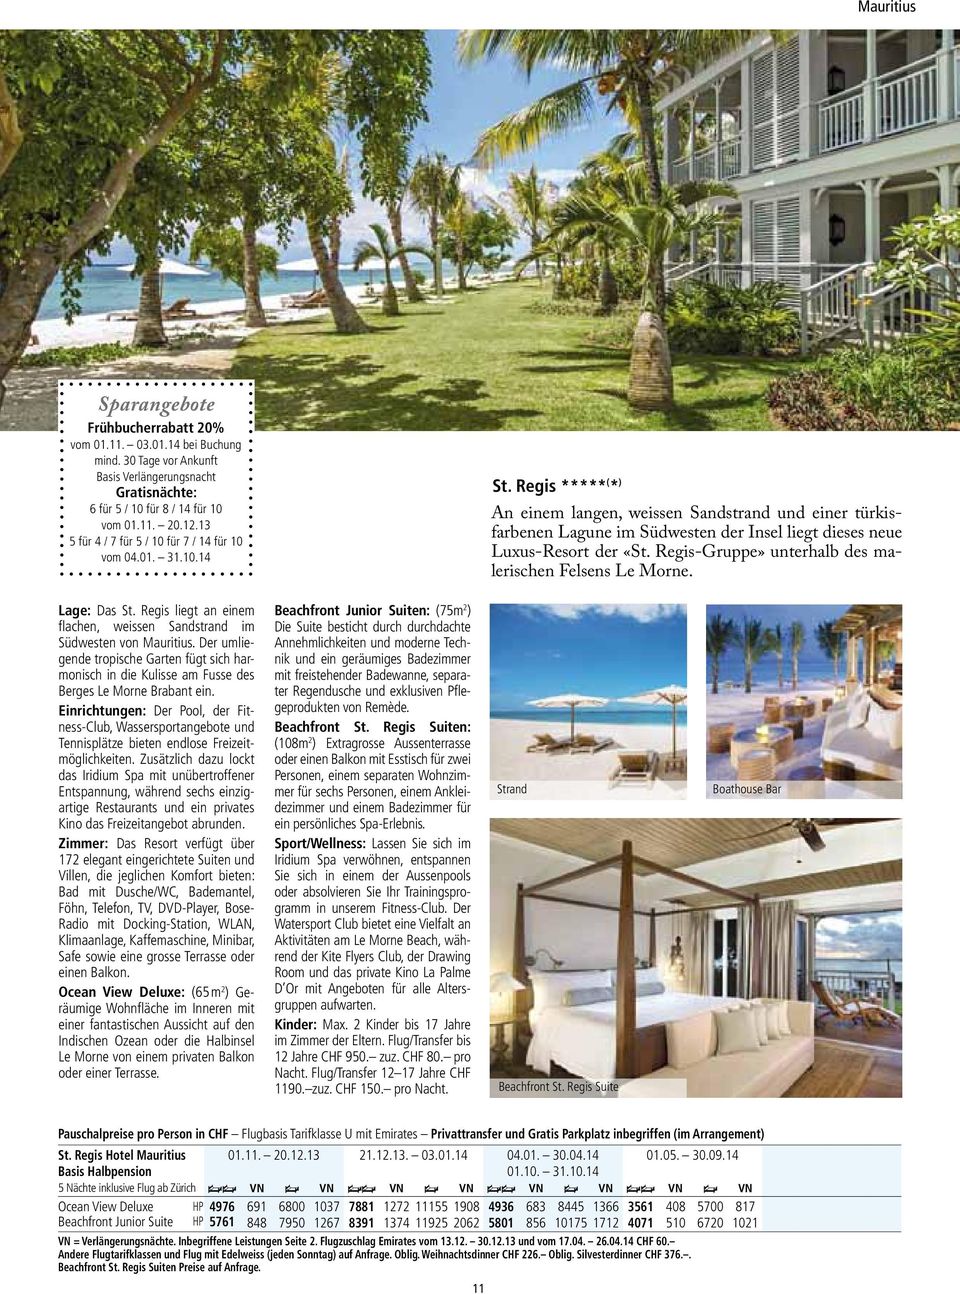 Regis ***** ( * ) Hotelanlage mit Blick aufs Meer An einem langen, weissen Sandstrand und einer türkisfarbenen Lagune im Südwesten der Insel liegt dieses neue Luxus-Resort der «St.